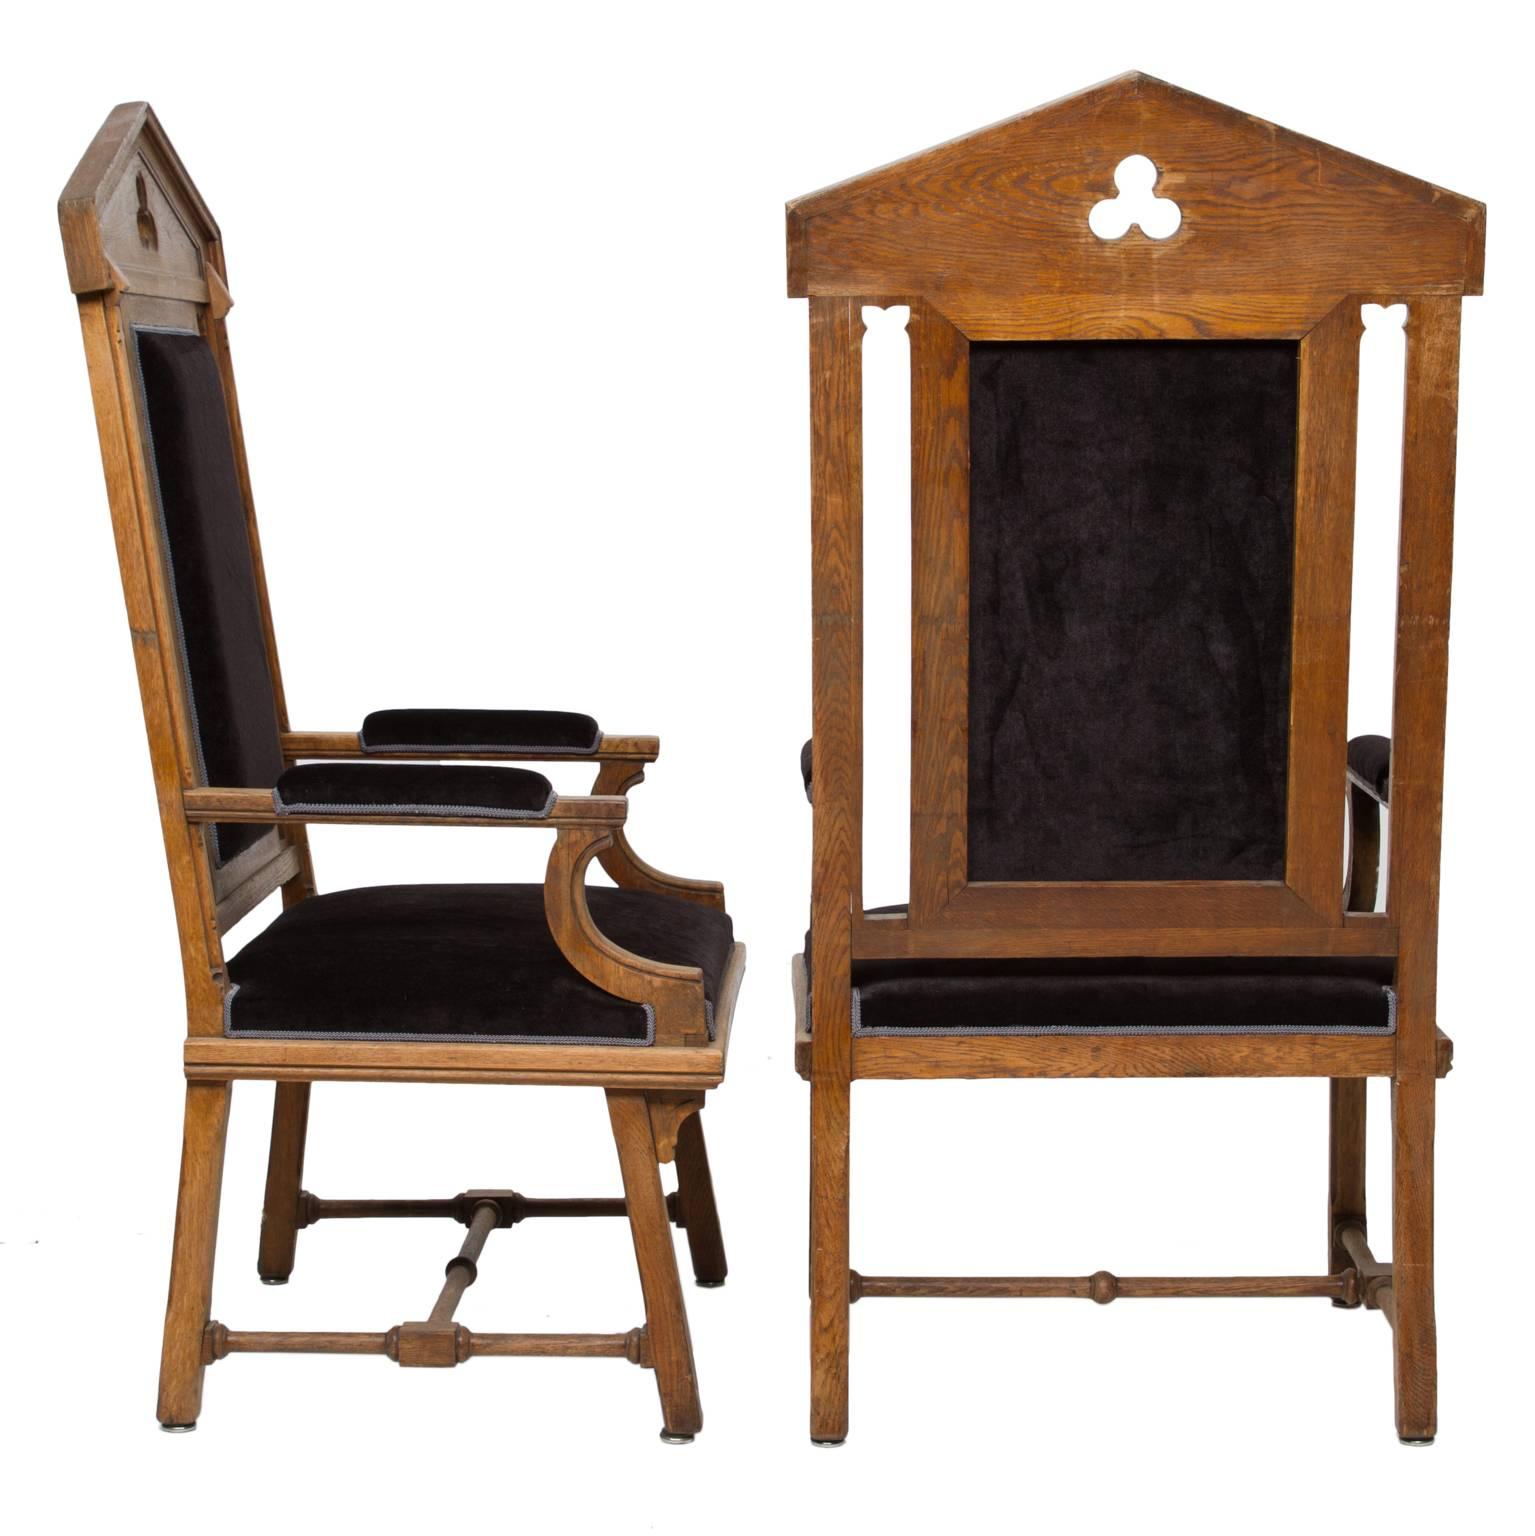 Große Sessel im maurischen Stil
Ein fantastisches und ungewöhnliches Paar Sessel im maurischen Stil. Hergestellt aus hochwertigem Eichenholz und mit einer Wachsschicht versehen. Kürzlich neu gepolstert mit schwarzem Samt. Die Größe dieser Stühle